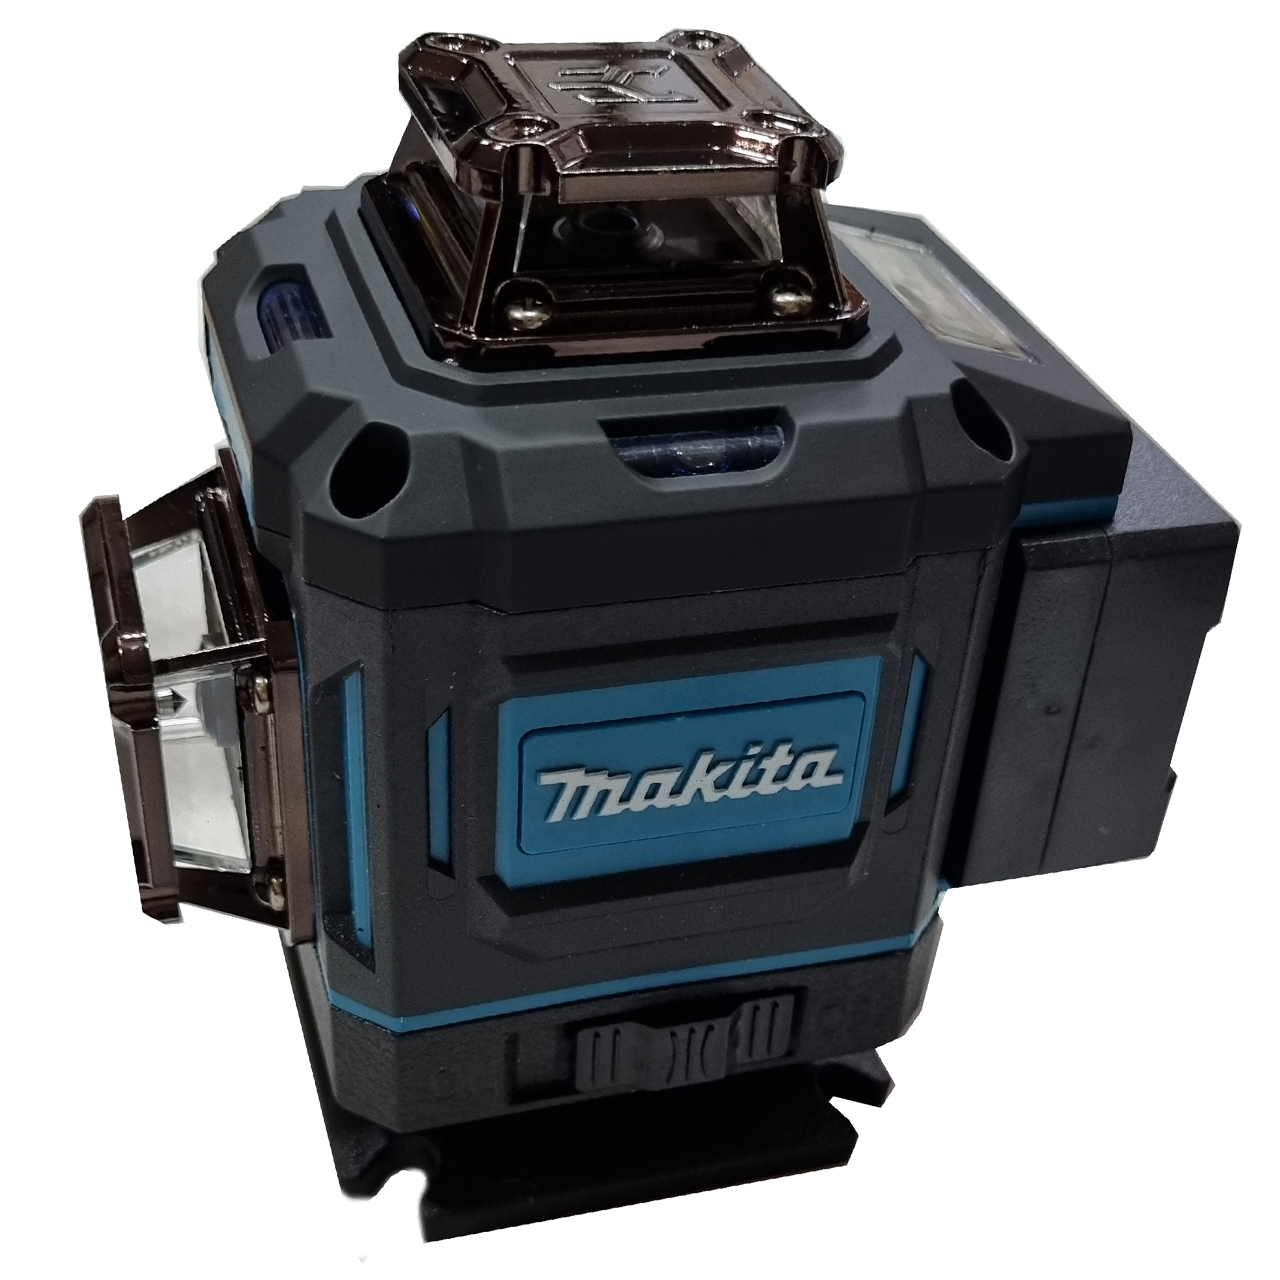 نکته خرید - قیمت روز تراز لیزری ماکیتا مدل4 بعدی 16 لاین کد Mak 360-4D نور سبز خرید